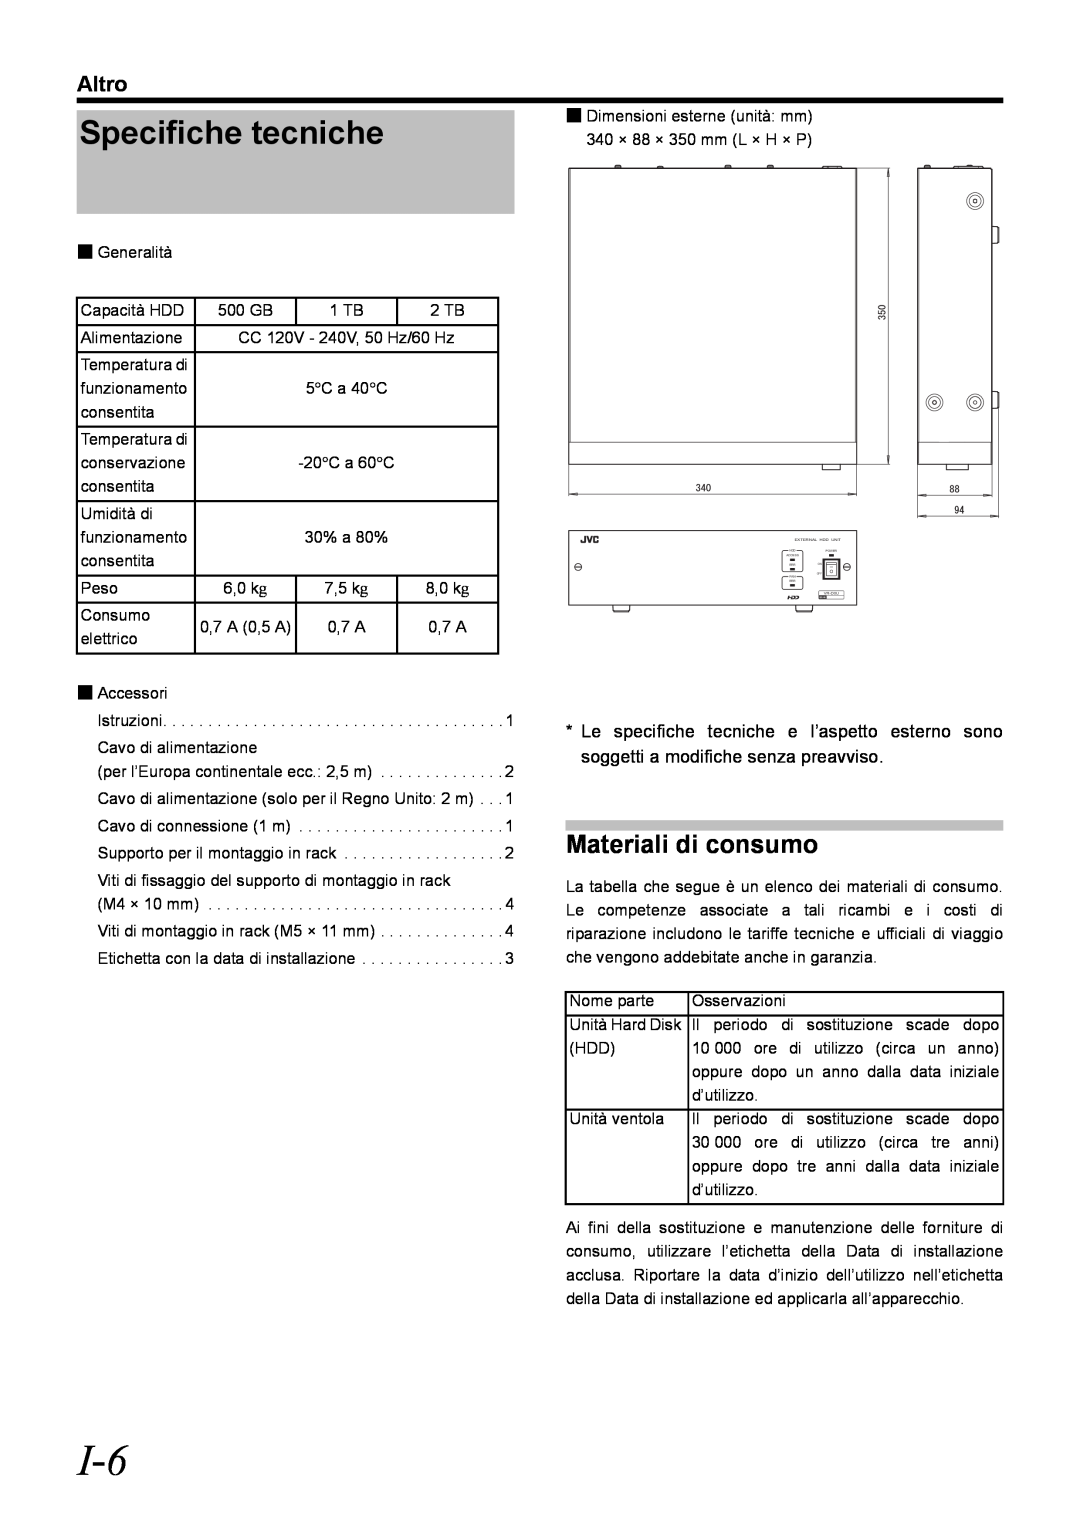 JVC VR-D0U manual Specifiche tecniche, Materiali di consumo, Altro 